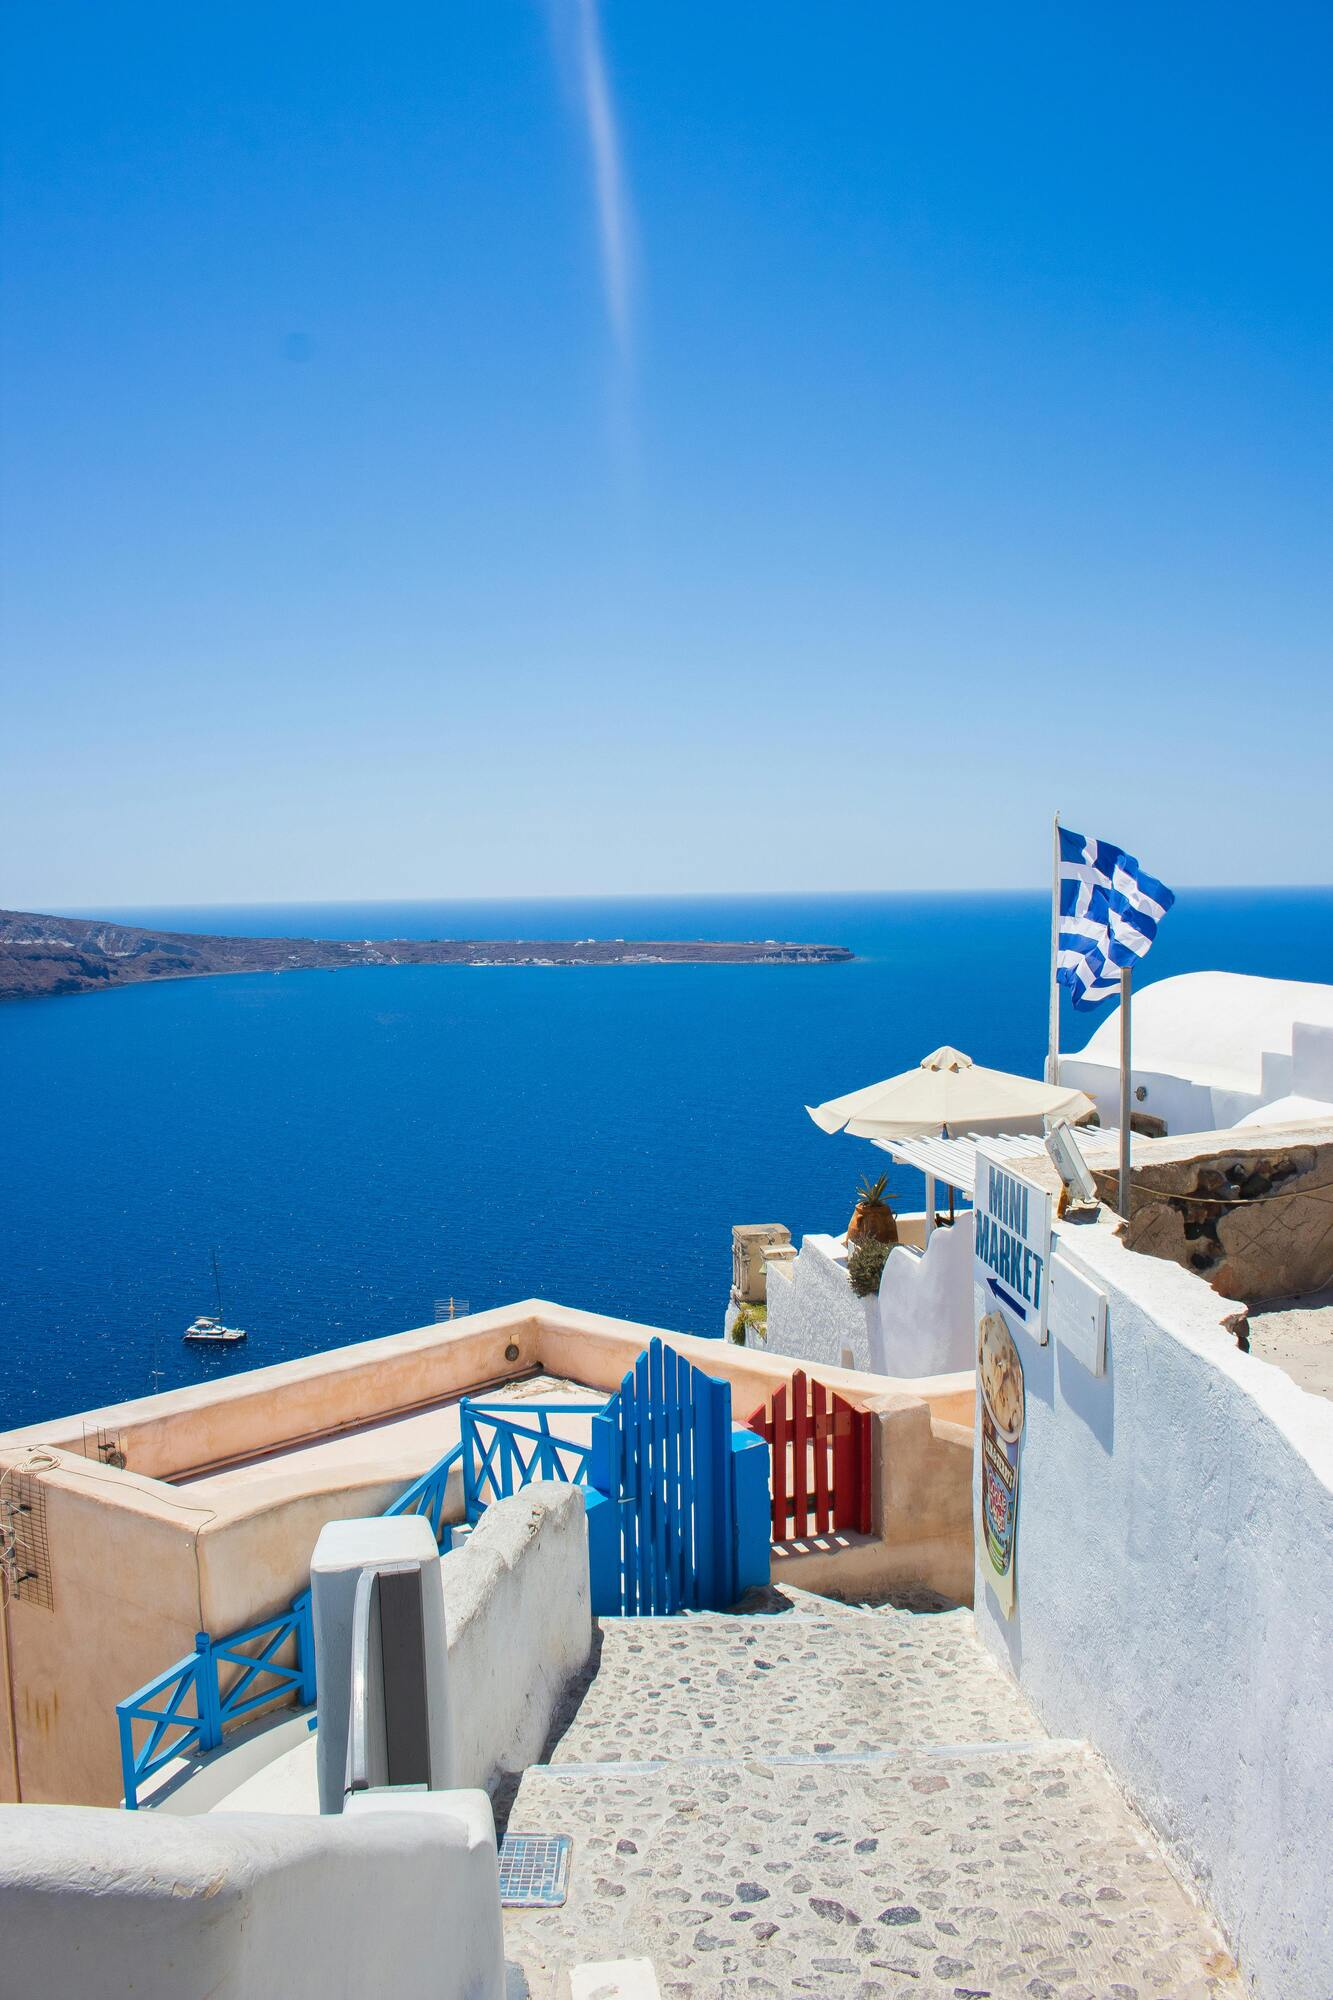 Туризм в Греции бьет все рекорды: сколько и откуда приезжало иностранцев